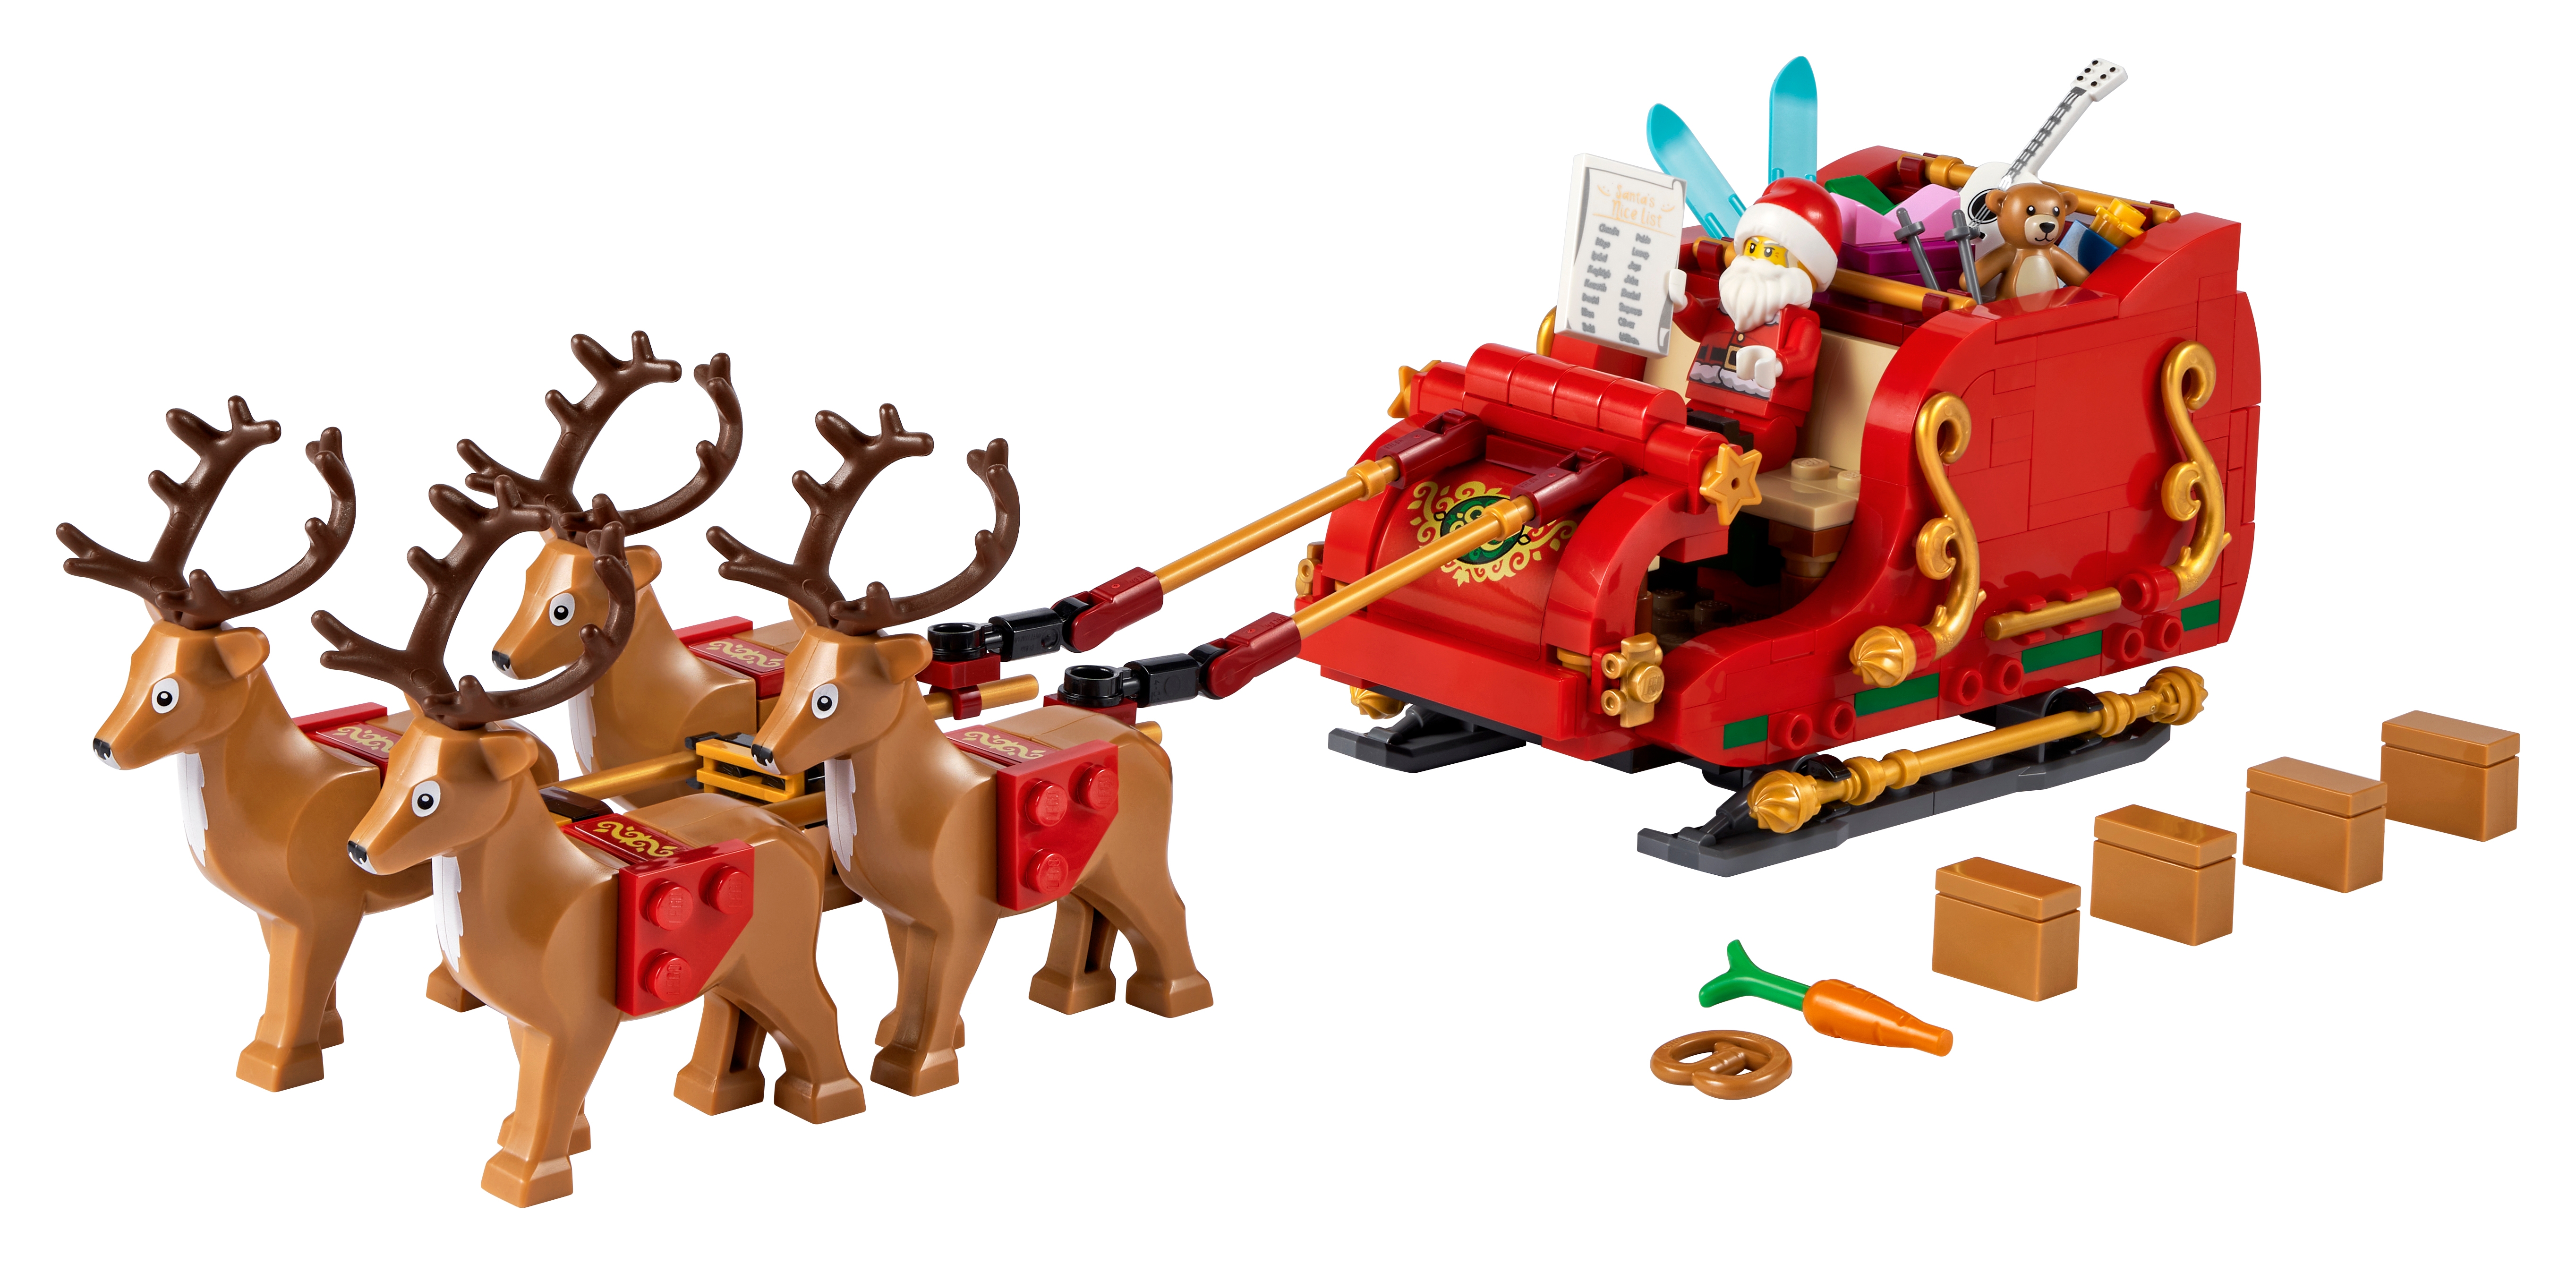 Santa Claus sleigh